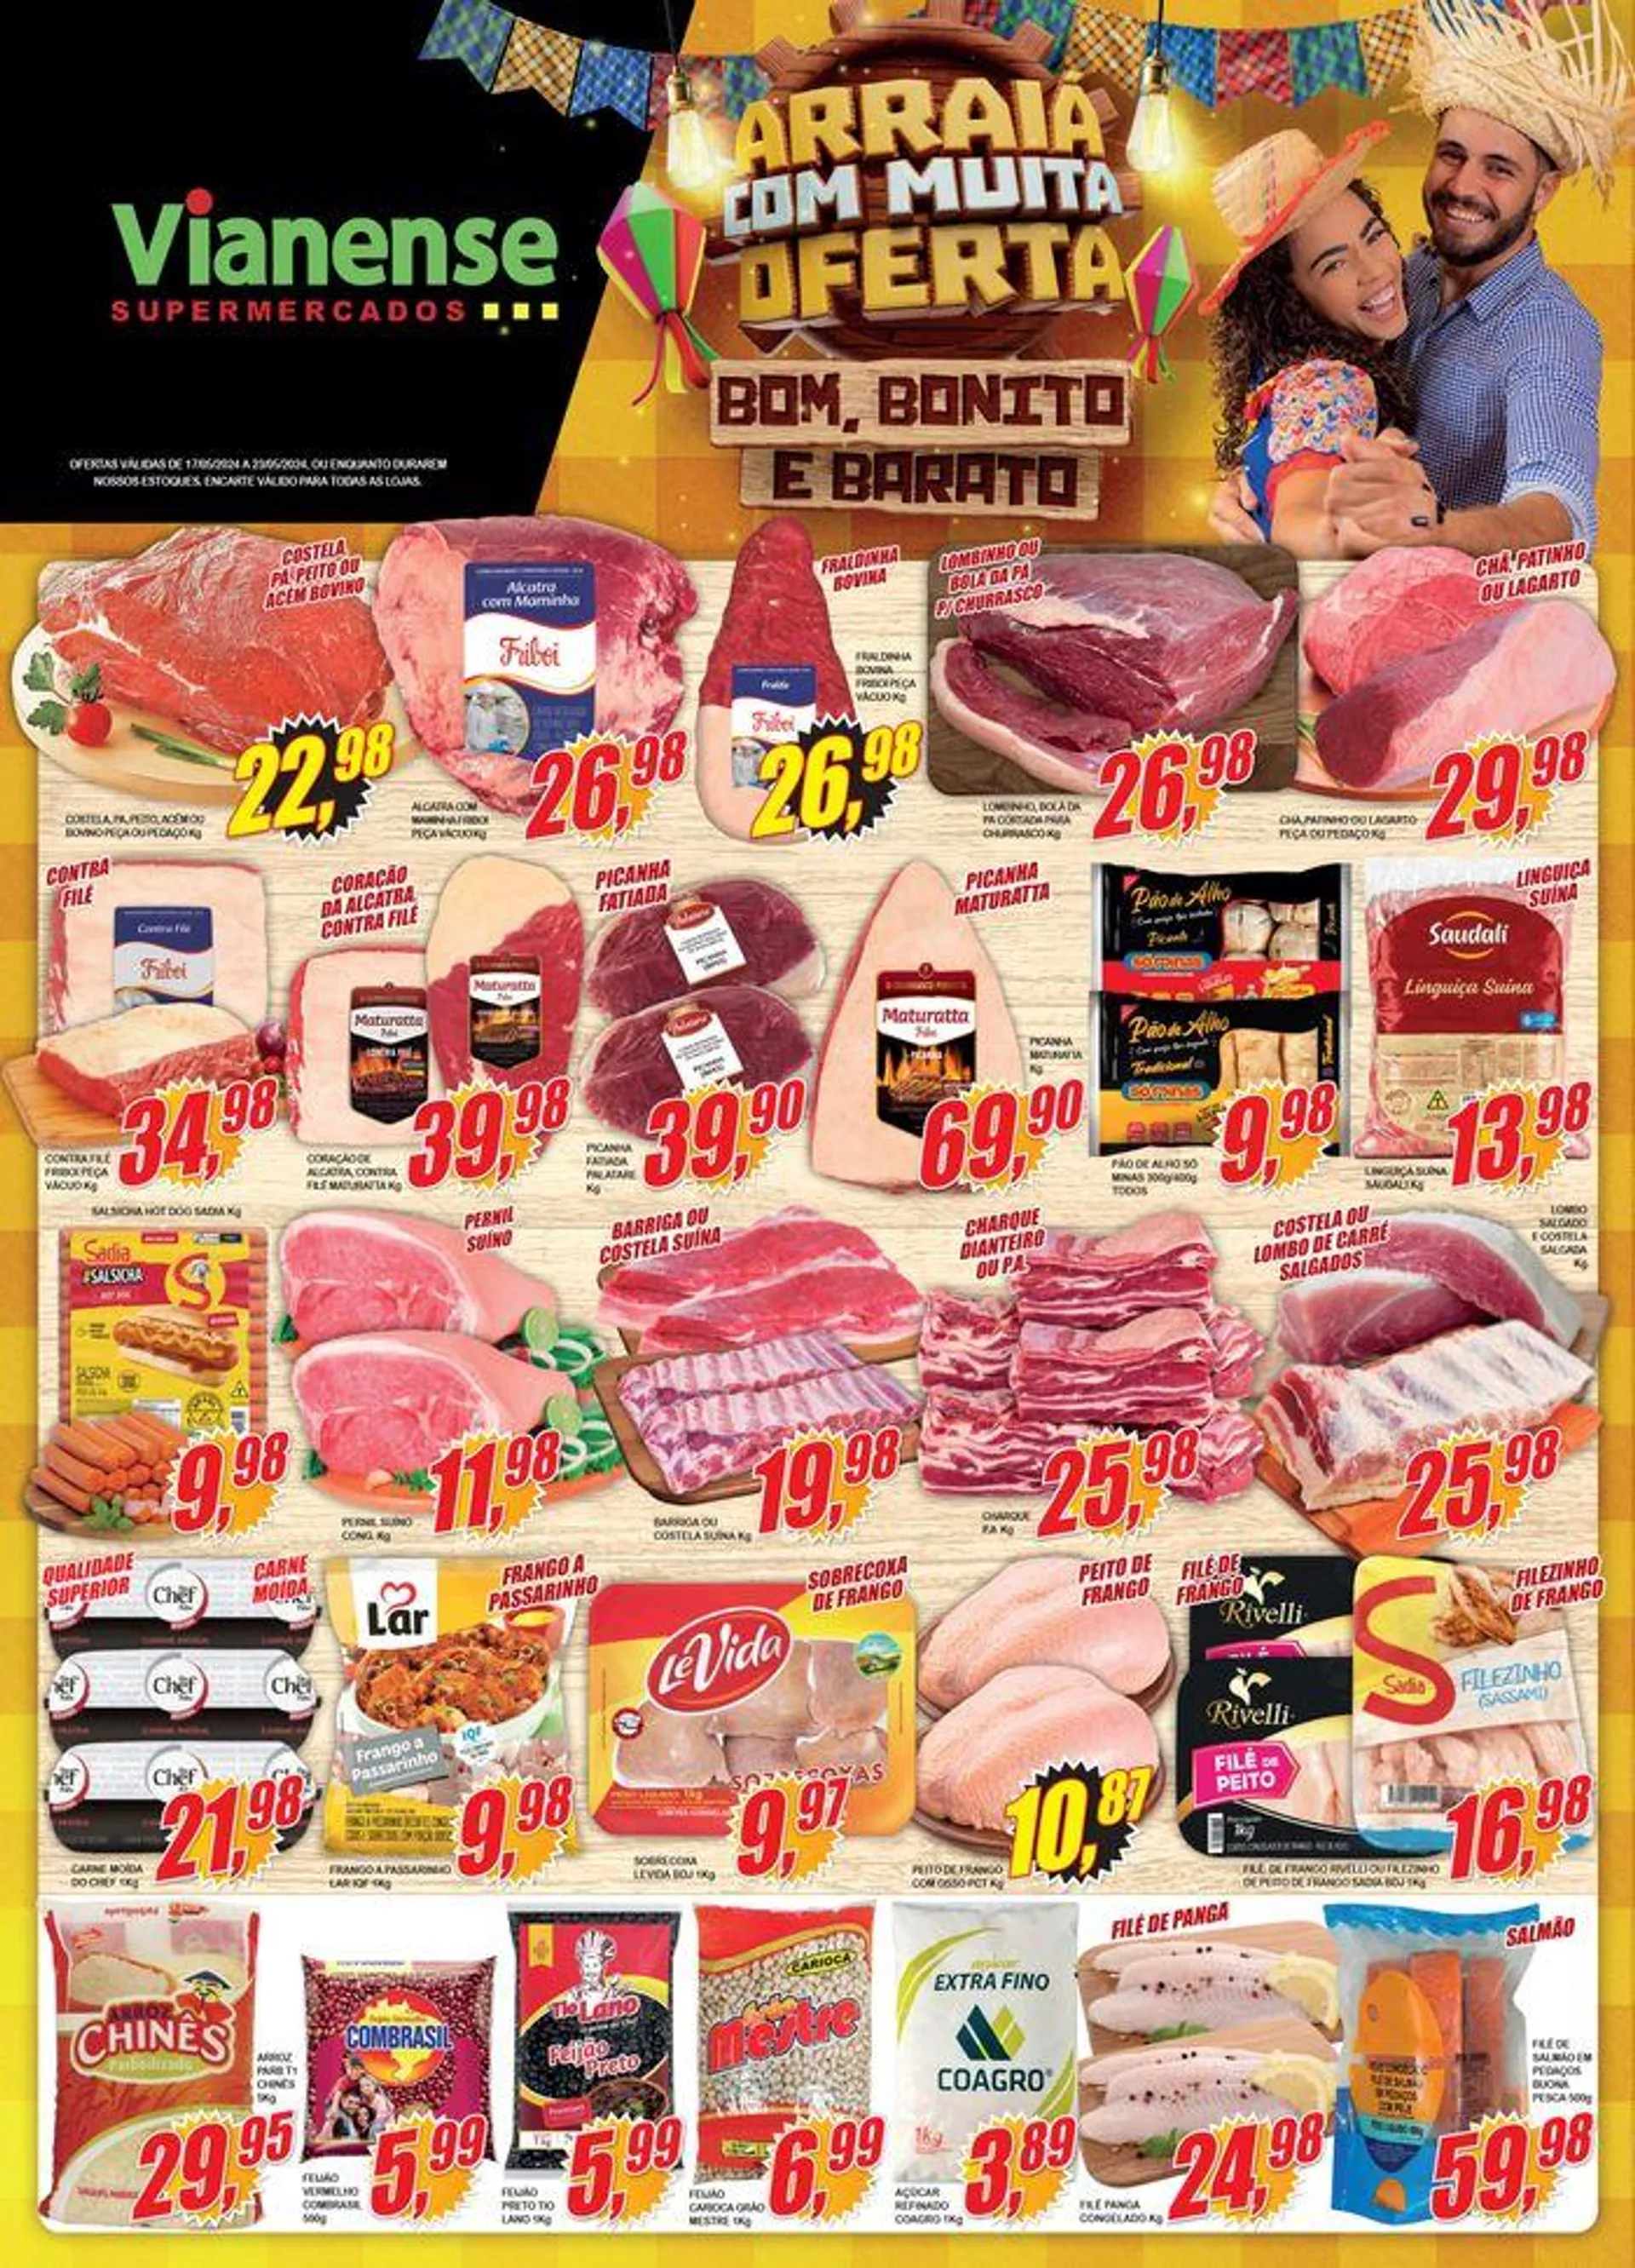 Oferta Vianense Supermercados - 1